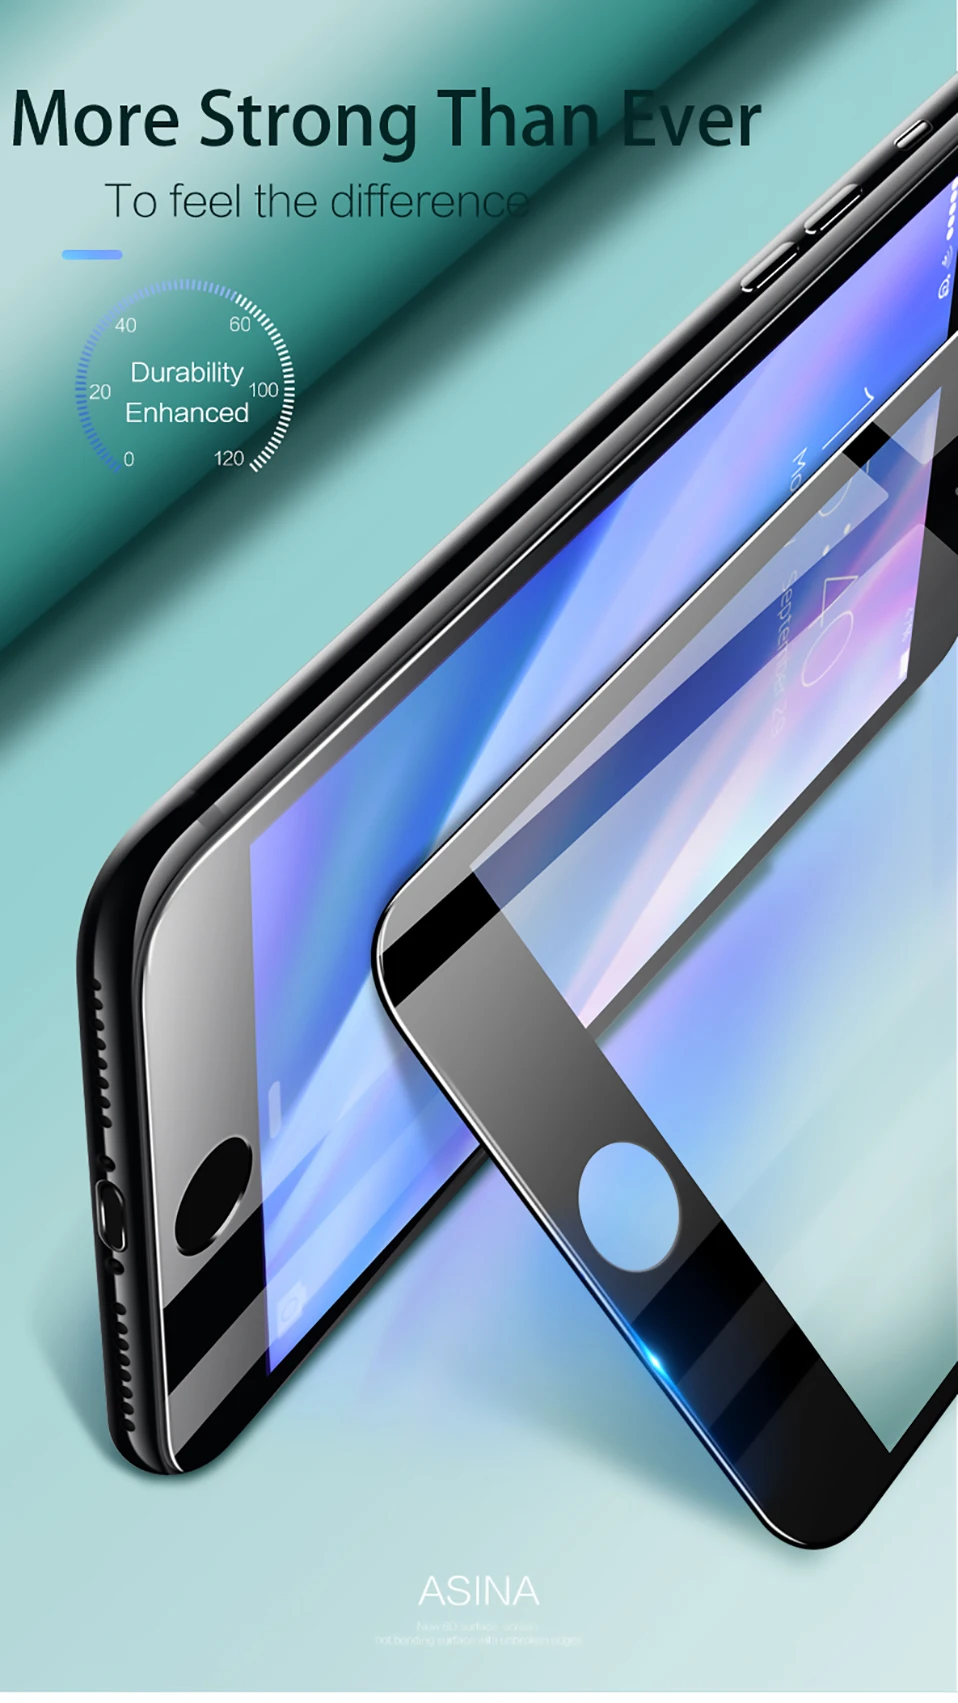 ASINA полное покрытие 6D протектор экрана для iPhone 7 8 Plus X Закаленное стекло 10H твердость изогнутый экран протектор устойчивый к царапинам